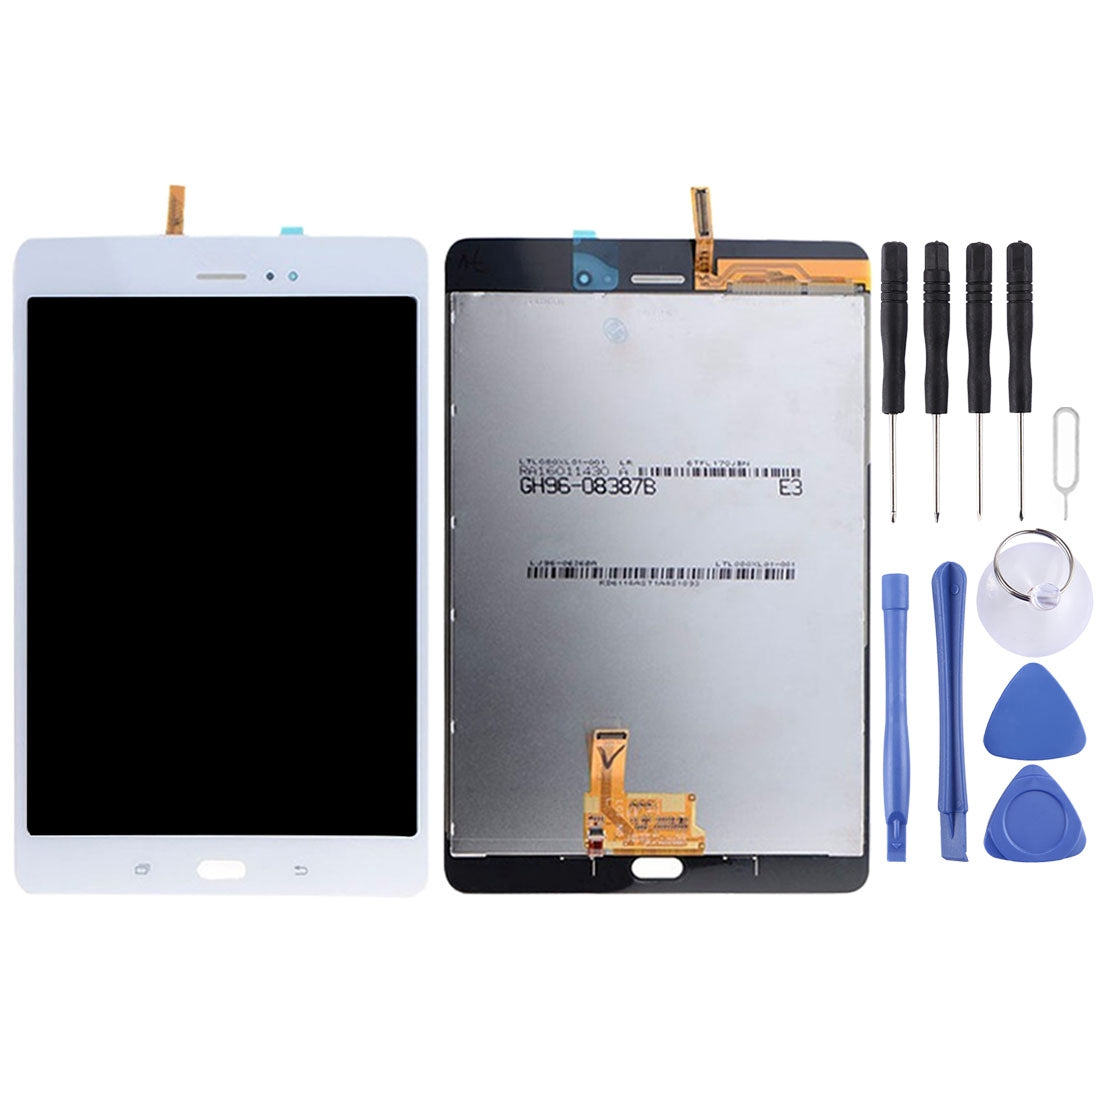 Pantalla LCD + Tactil Samsung Galaxy Tab A 8.0 T355 (Versión 3G) Blanco